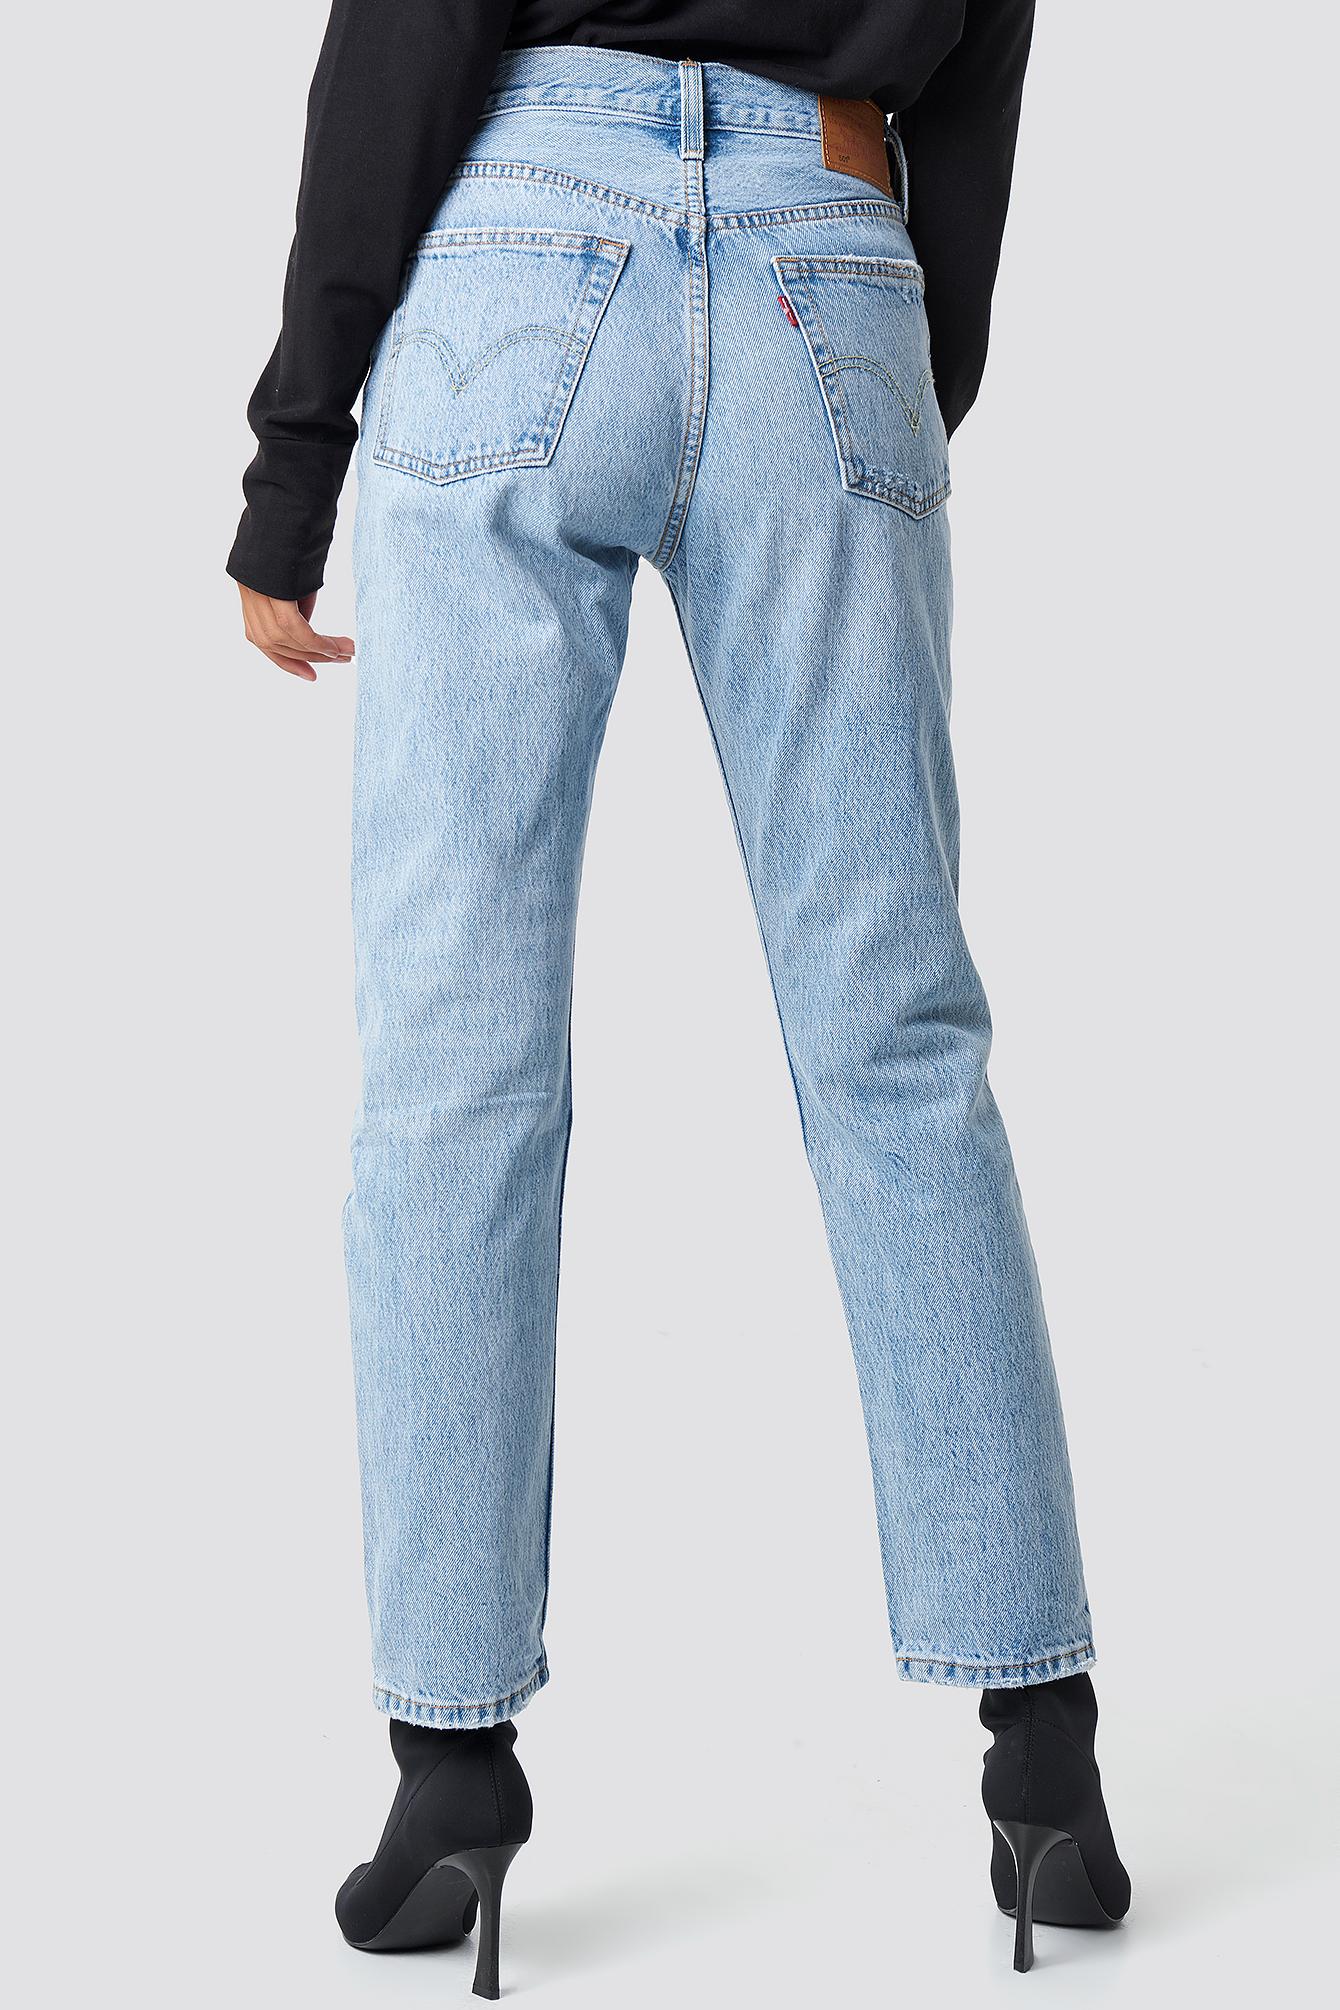 Levi's Denim 501 Crop Jeans Blue - Lyst